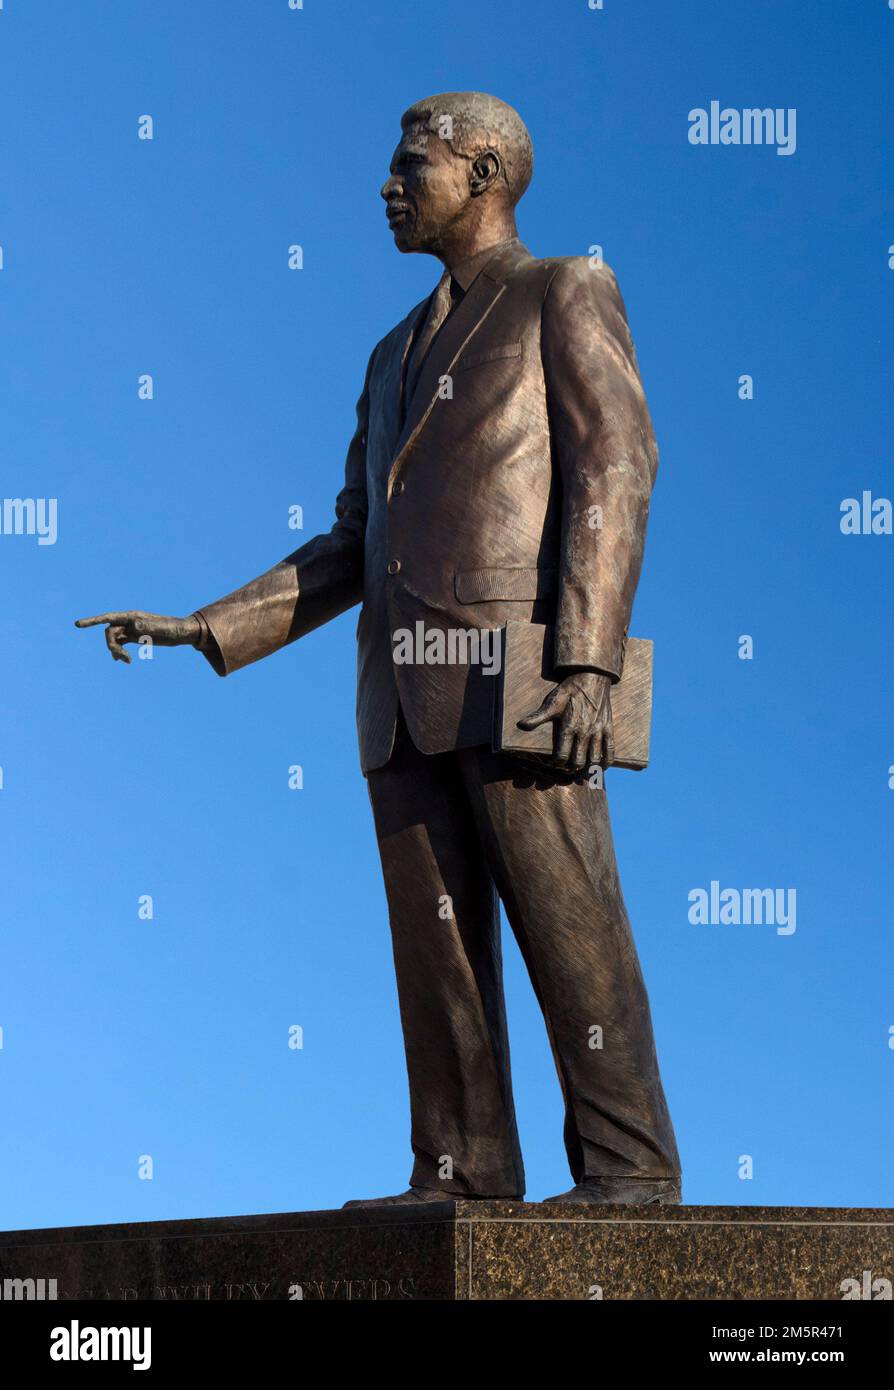 Medgar Evers. Statua del leader dei diritti civili Medgar Wiley Evers (1925-1963) nel campus dell'Alcorn state University, Lorman, Mississippi. Foto Stock